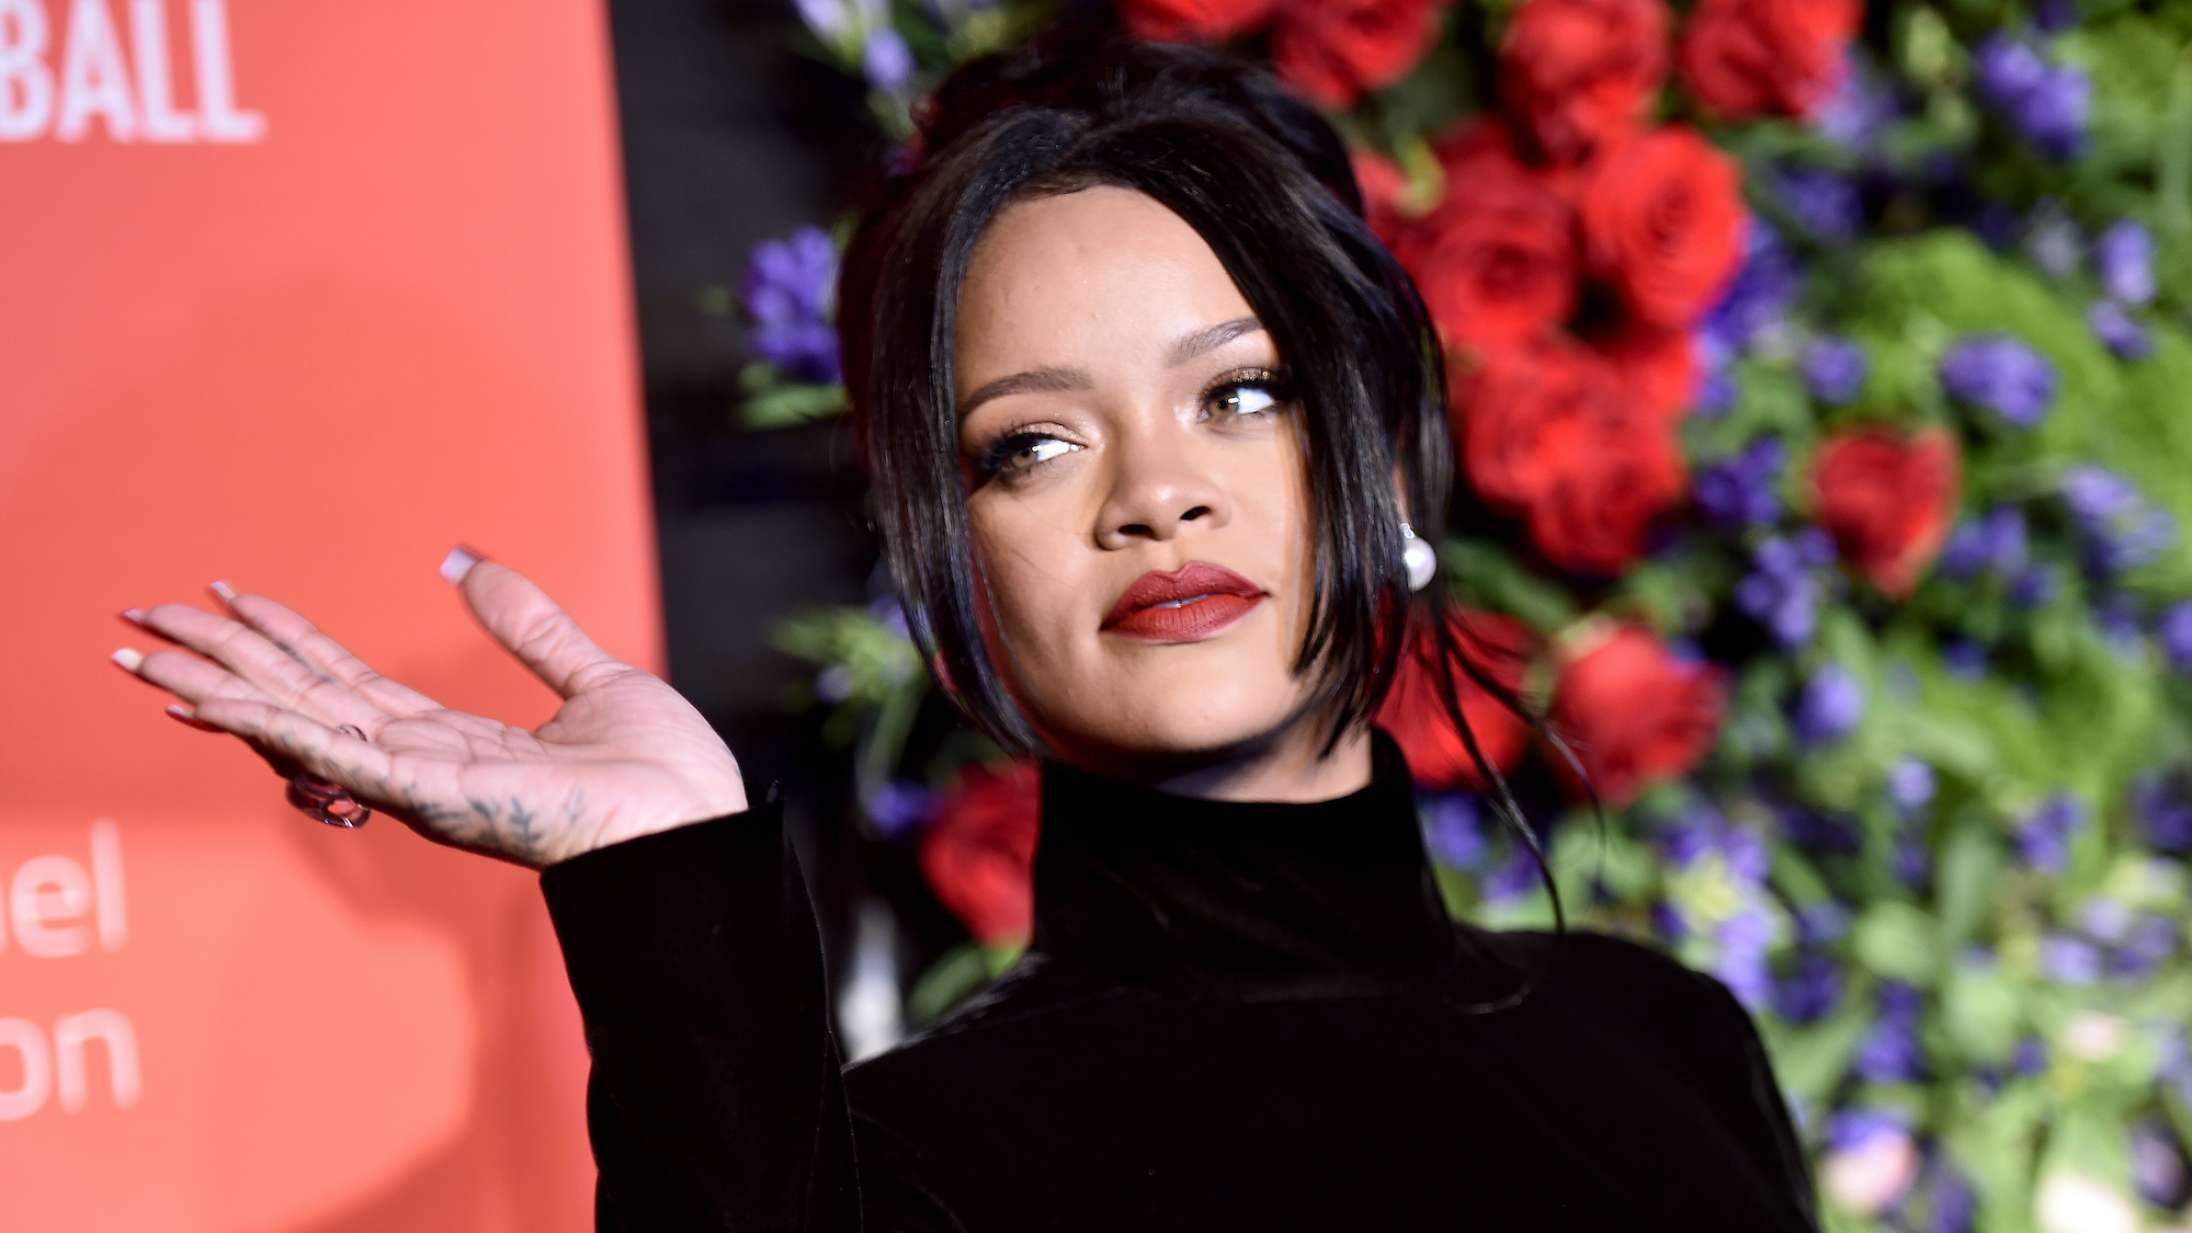 Amazon køber angiveligt kommende Rihanna-dokumentar for svimlende 25 millioner dollars